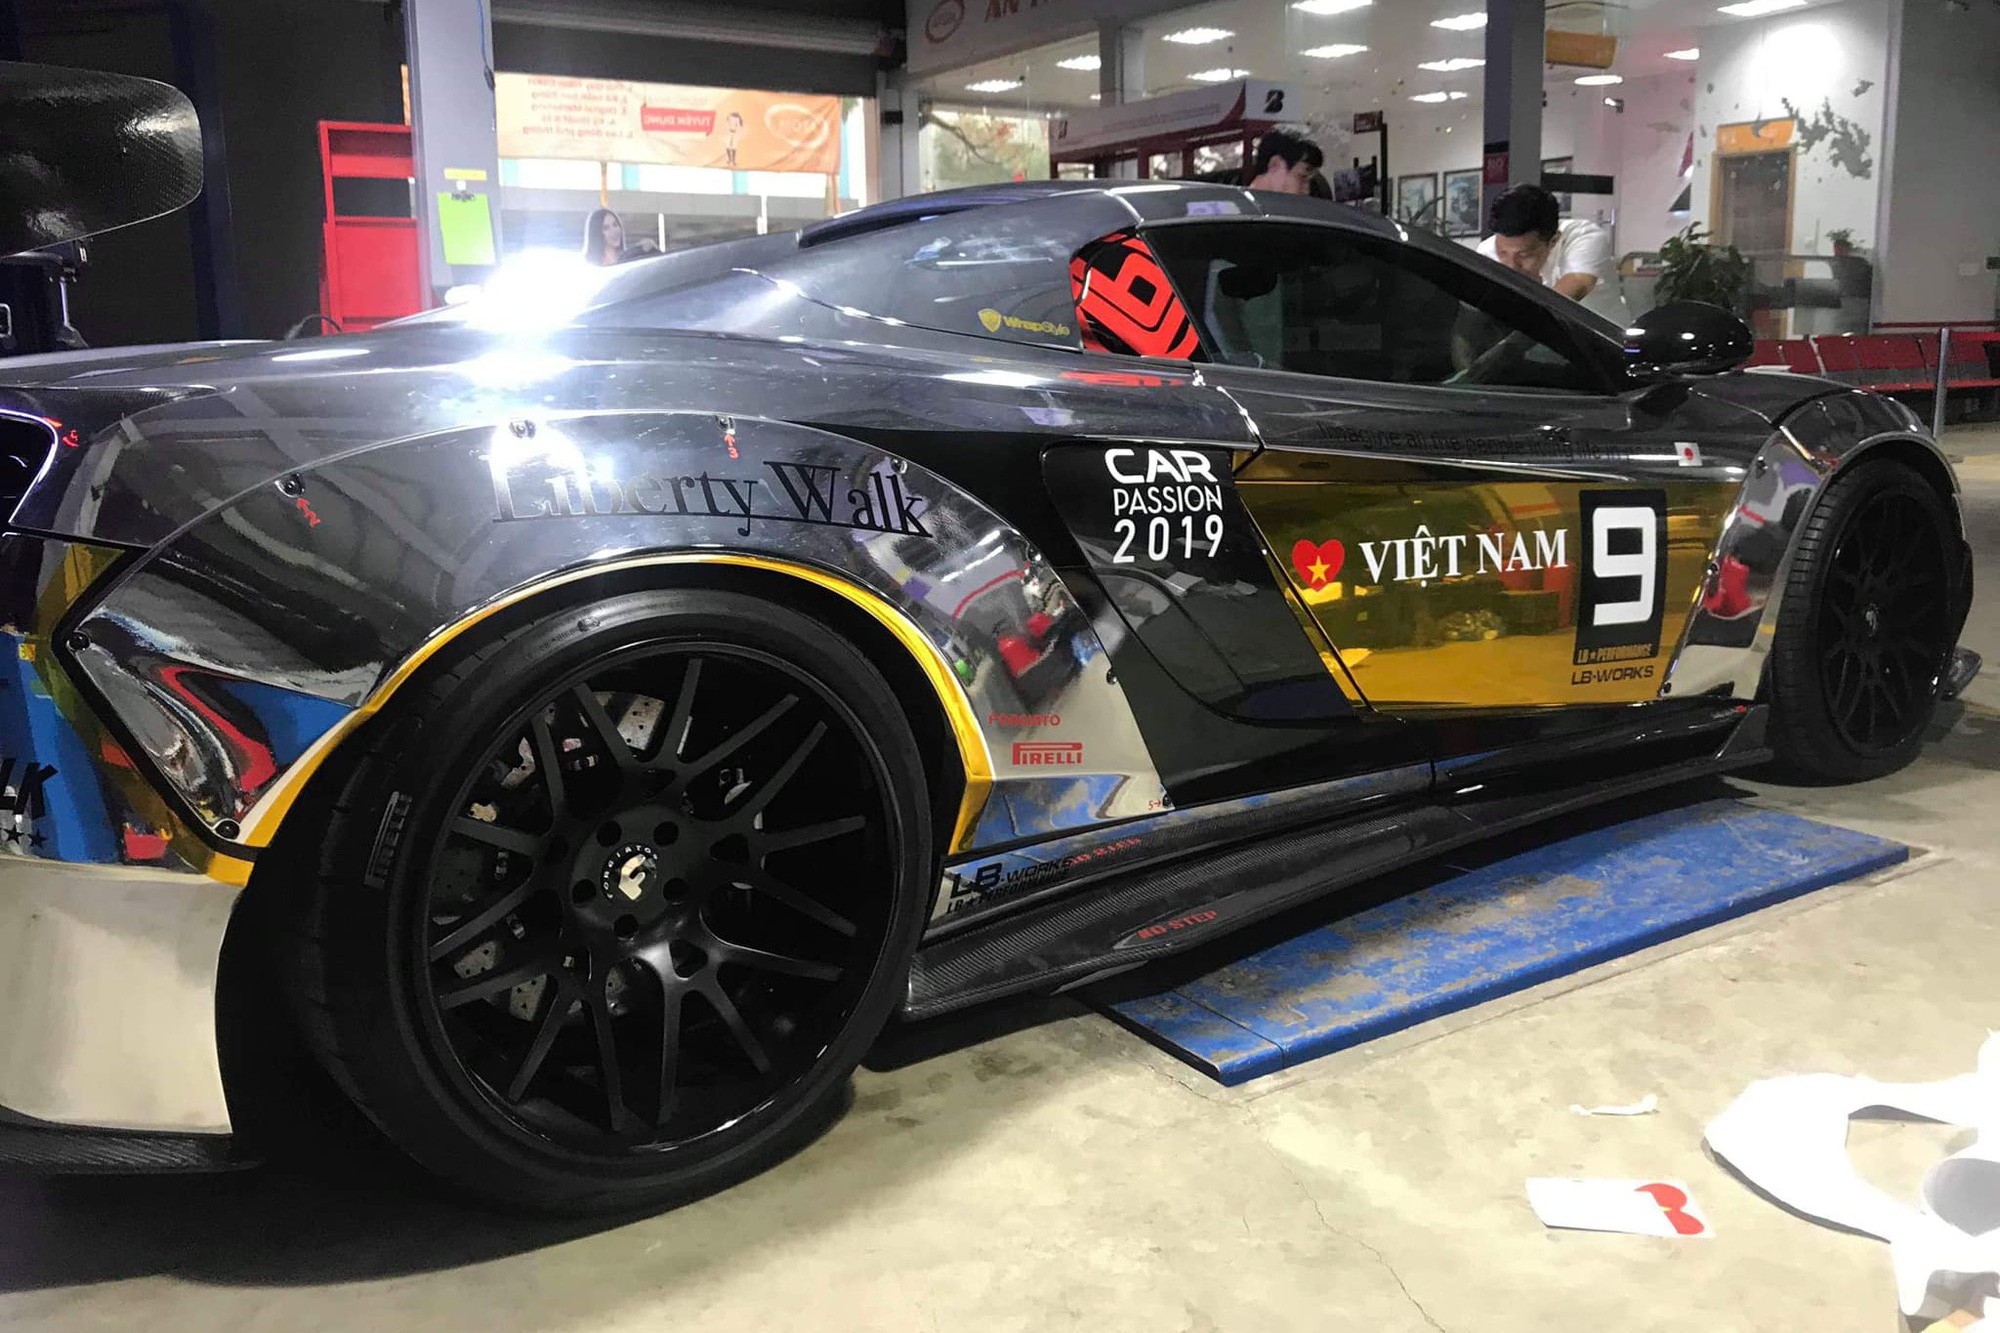 Thiếu gia Dương Kon tiết lộ hình ảnh cho thấy sẽ mang McLaren 650S Spider độ siêu độc tham gia Car Passion 2019